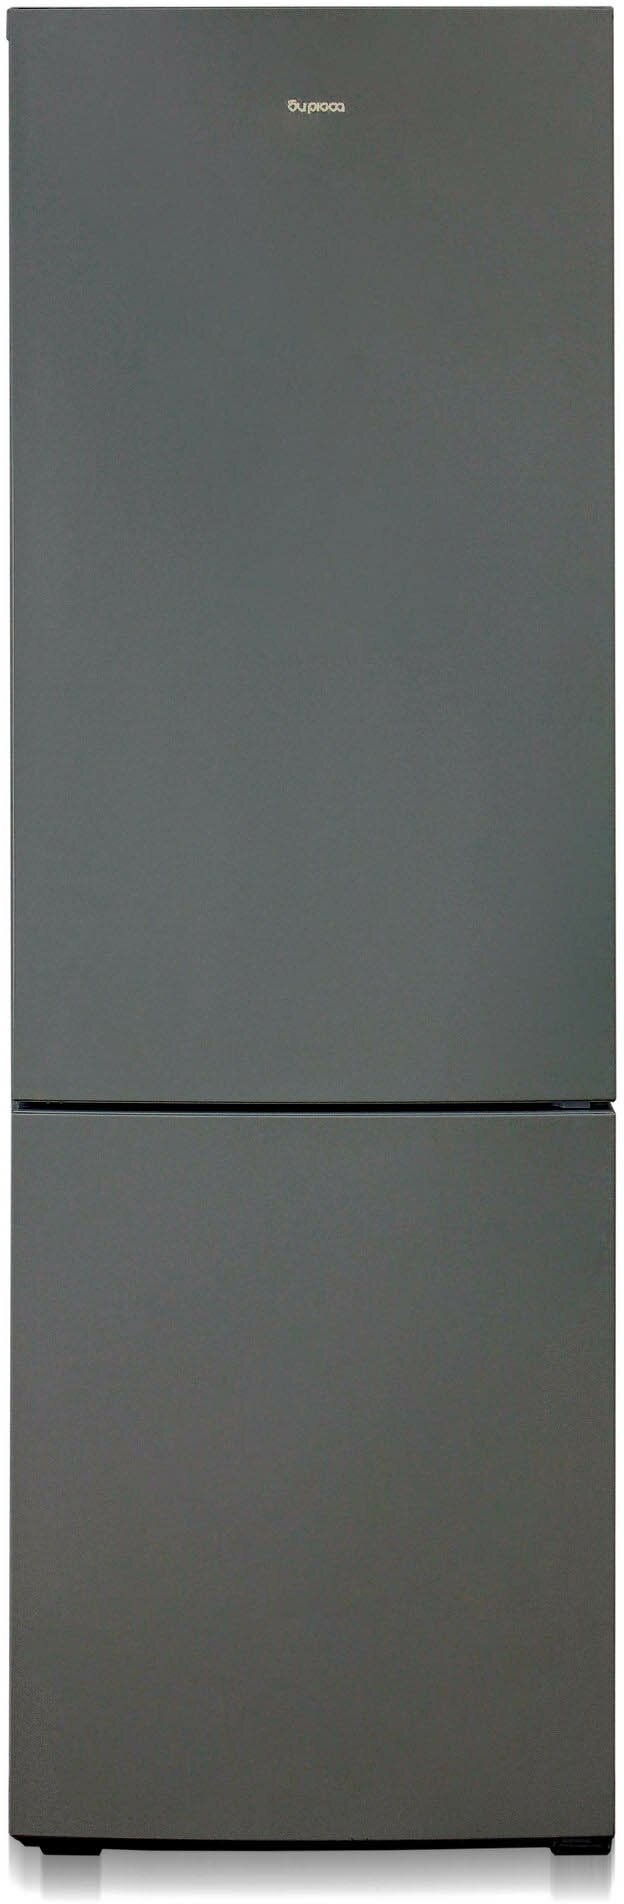 Холодильник Бирюса W6027, матовый графит